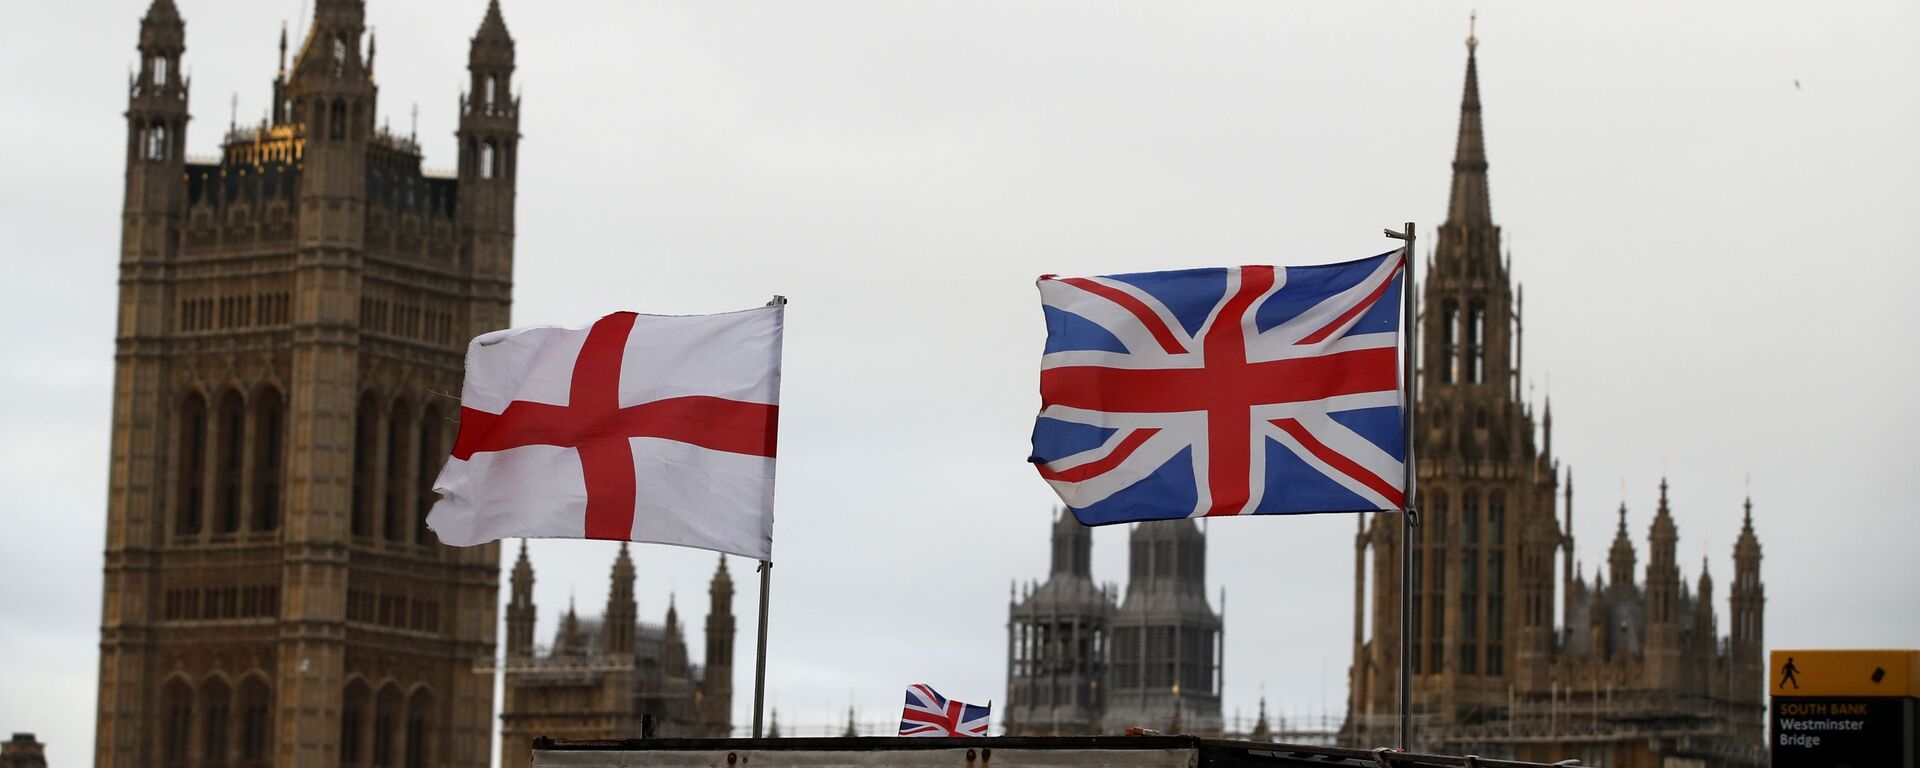 Britanska i engleska zastava ispred zgrade britanskog parlamenta u Londonu - Sputnik Srbija, 1920, 02.05.2021